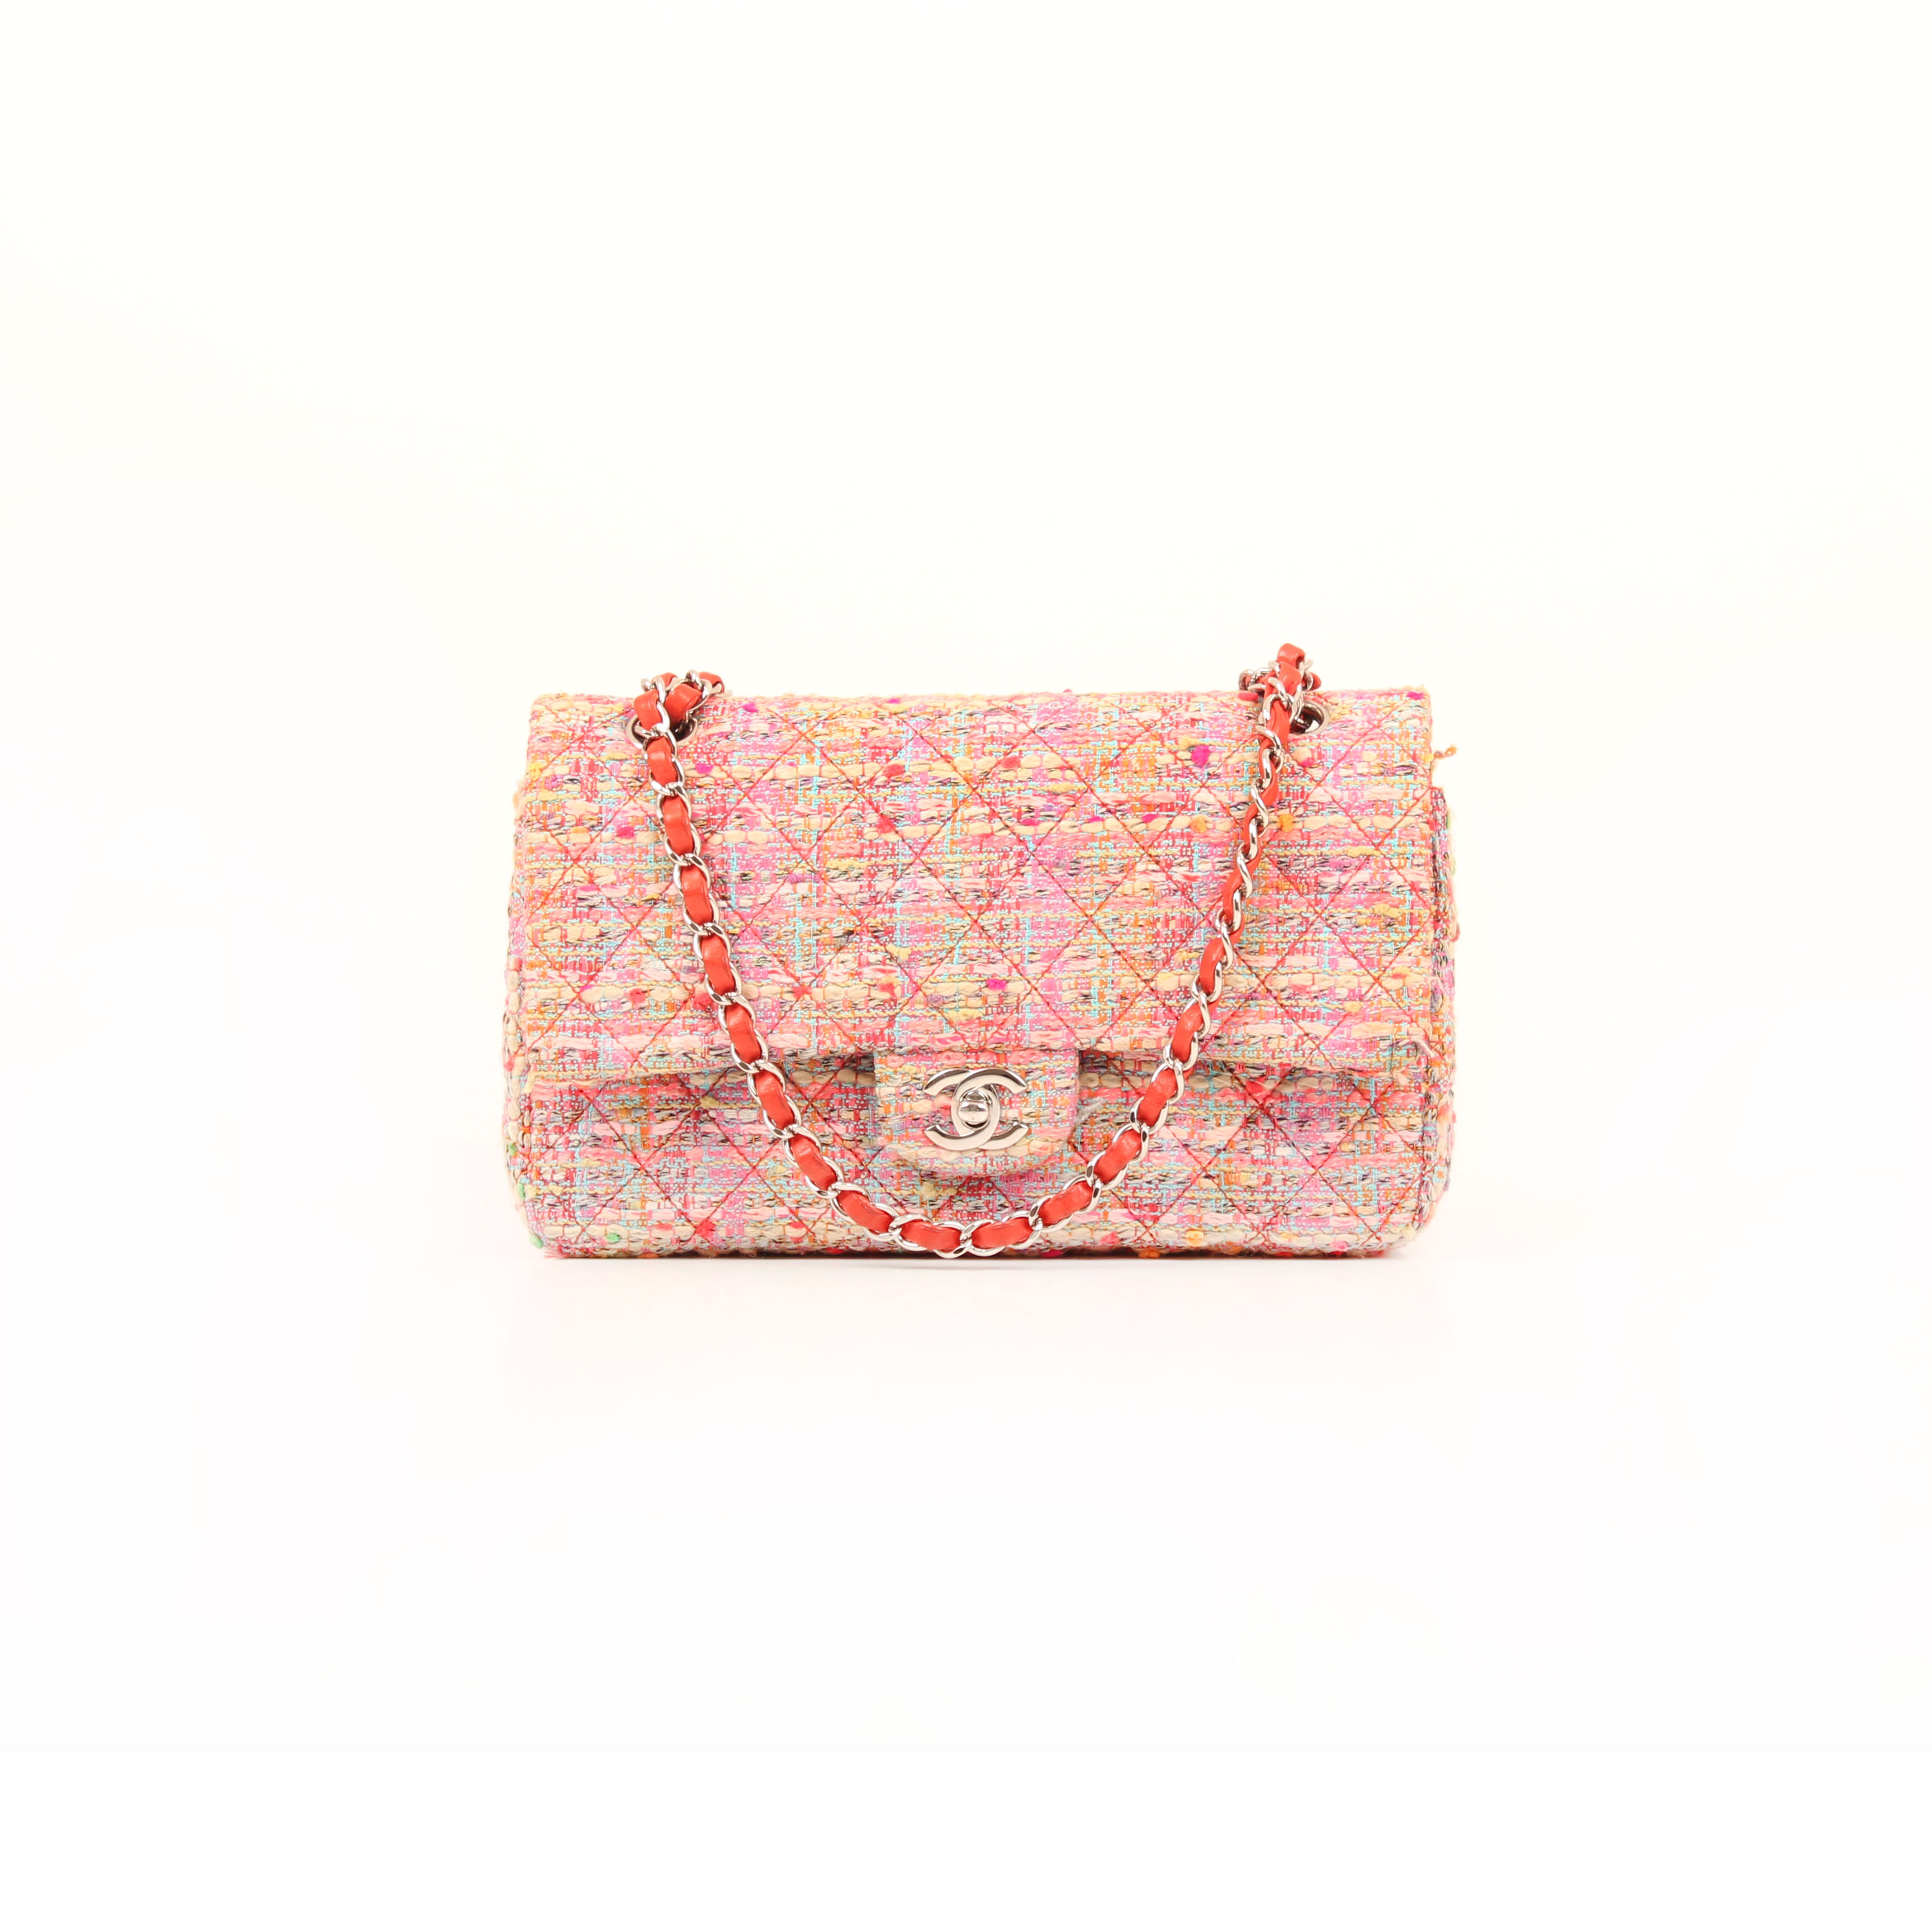 Imagen frontal del bolso chanel timeless double flap en tweed rosa multicolor fluor